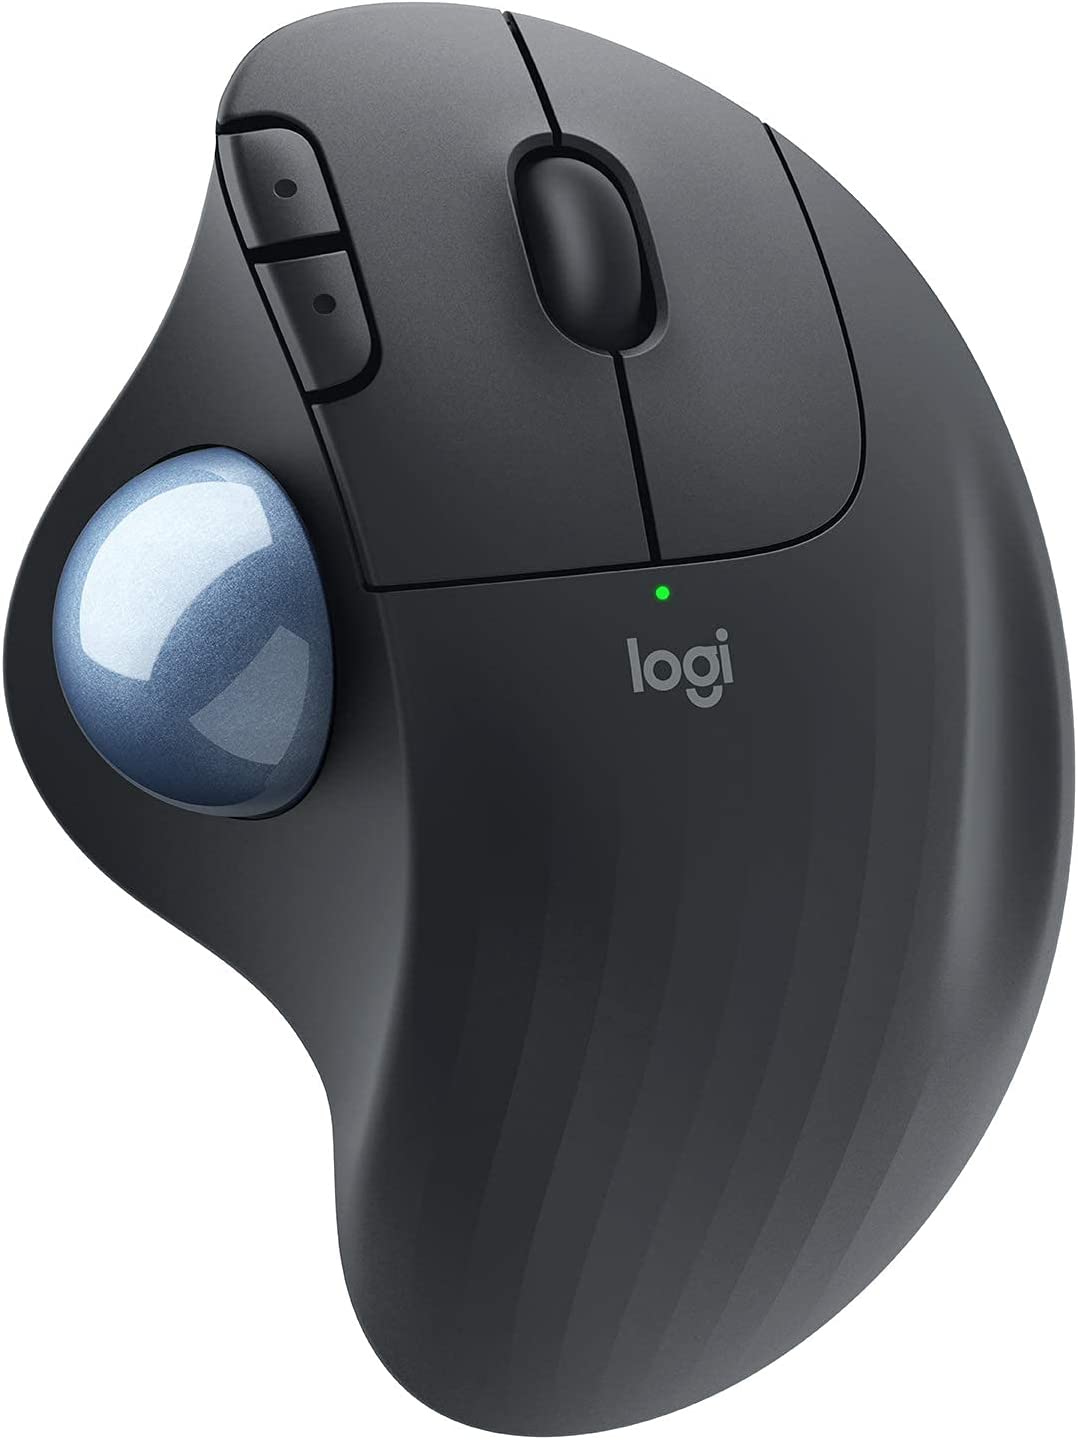 Logitech Ergo M575 무선 트랙볼 마우스 간편한 엄지손가락 제어 정밀하고 부드러운 추적 인체공학적 편안한 디자인 Windows/Mac 블루투스 USB - 그래파이트 갱신